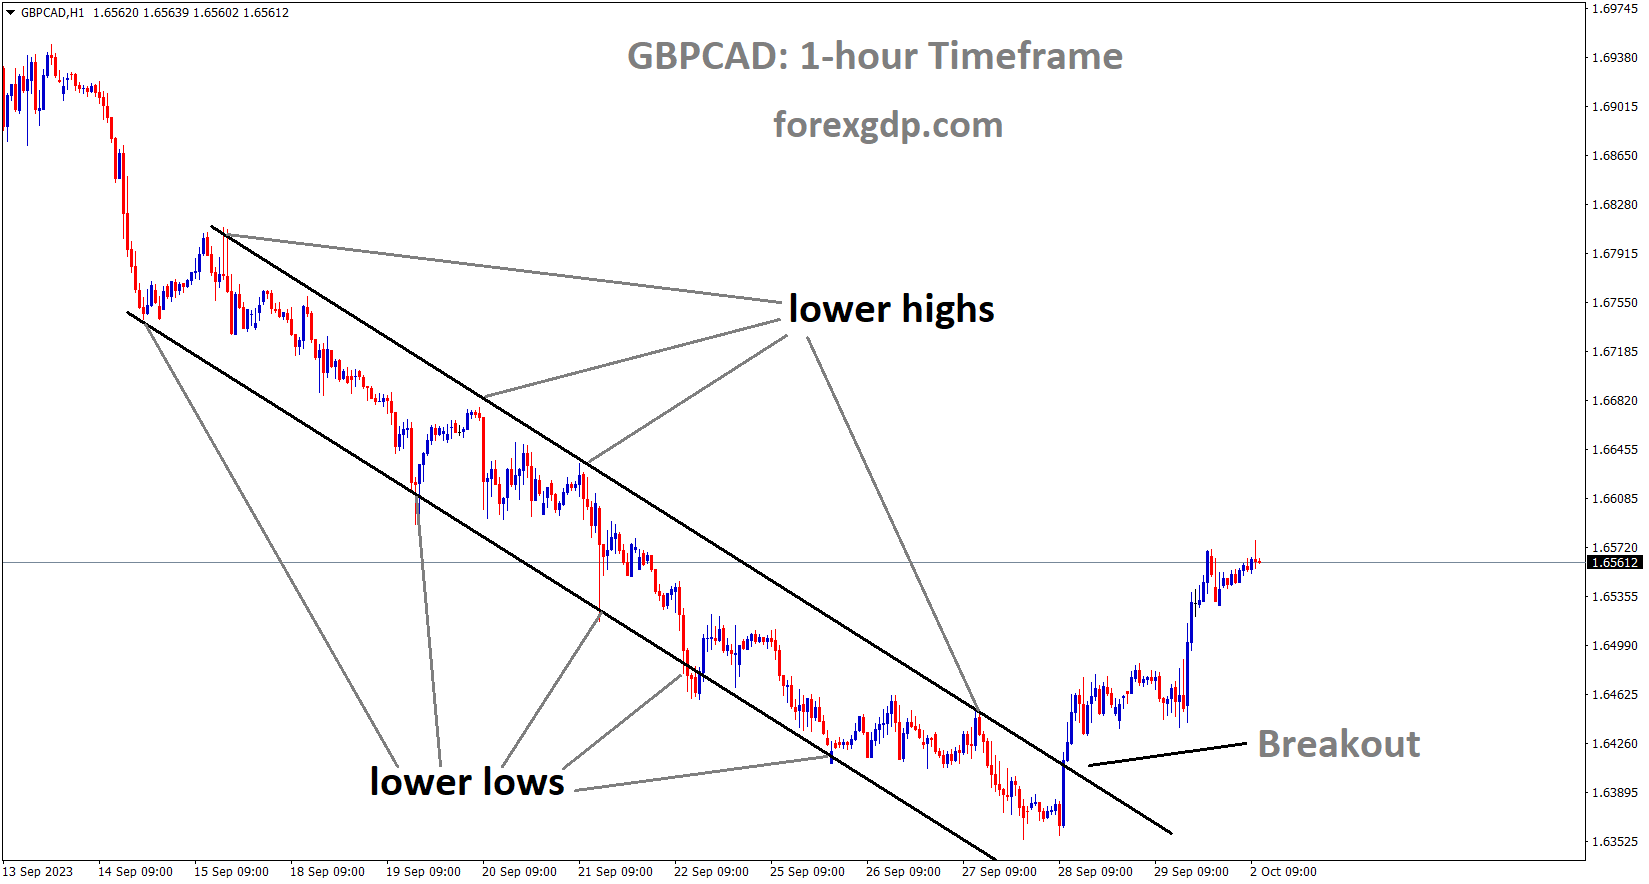 GBPCAD has broken the Descending channel in upside